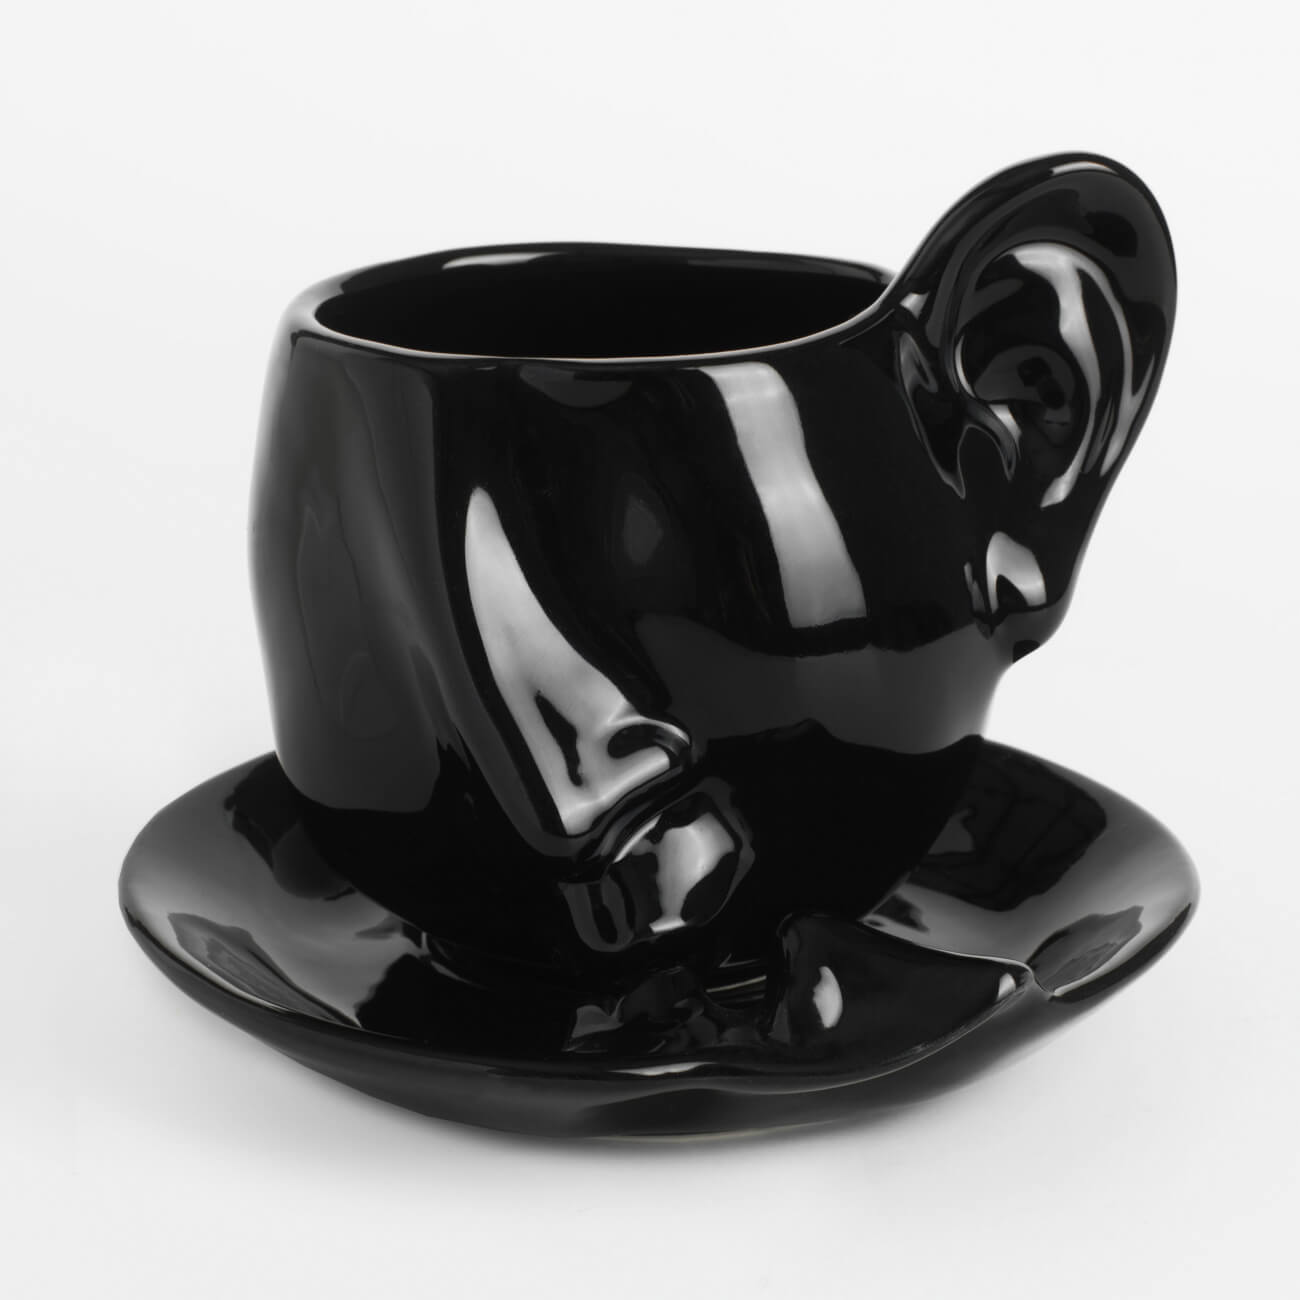 Пара чайная, 1 перс, 2 пр, 320 мл, керамика, черная, Поцелуй, Baise энотера шелковый поцелуй евросемена